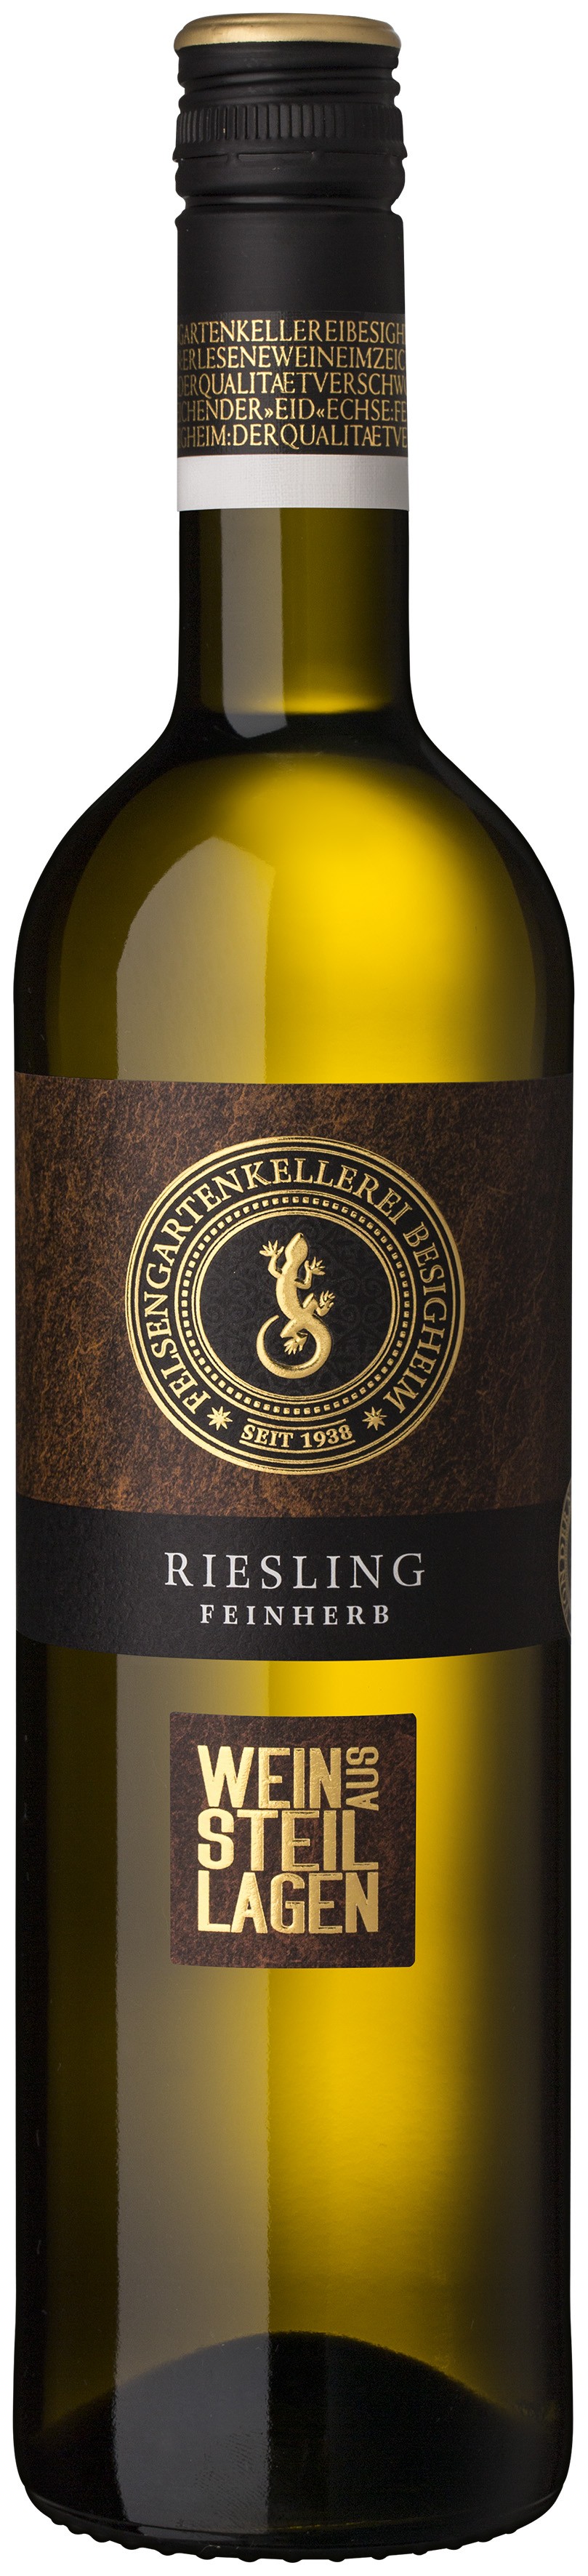 Besigheimer Felsengarten Steillagen Riesling Qualitätswein feinherb 